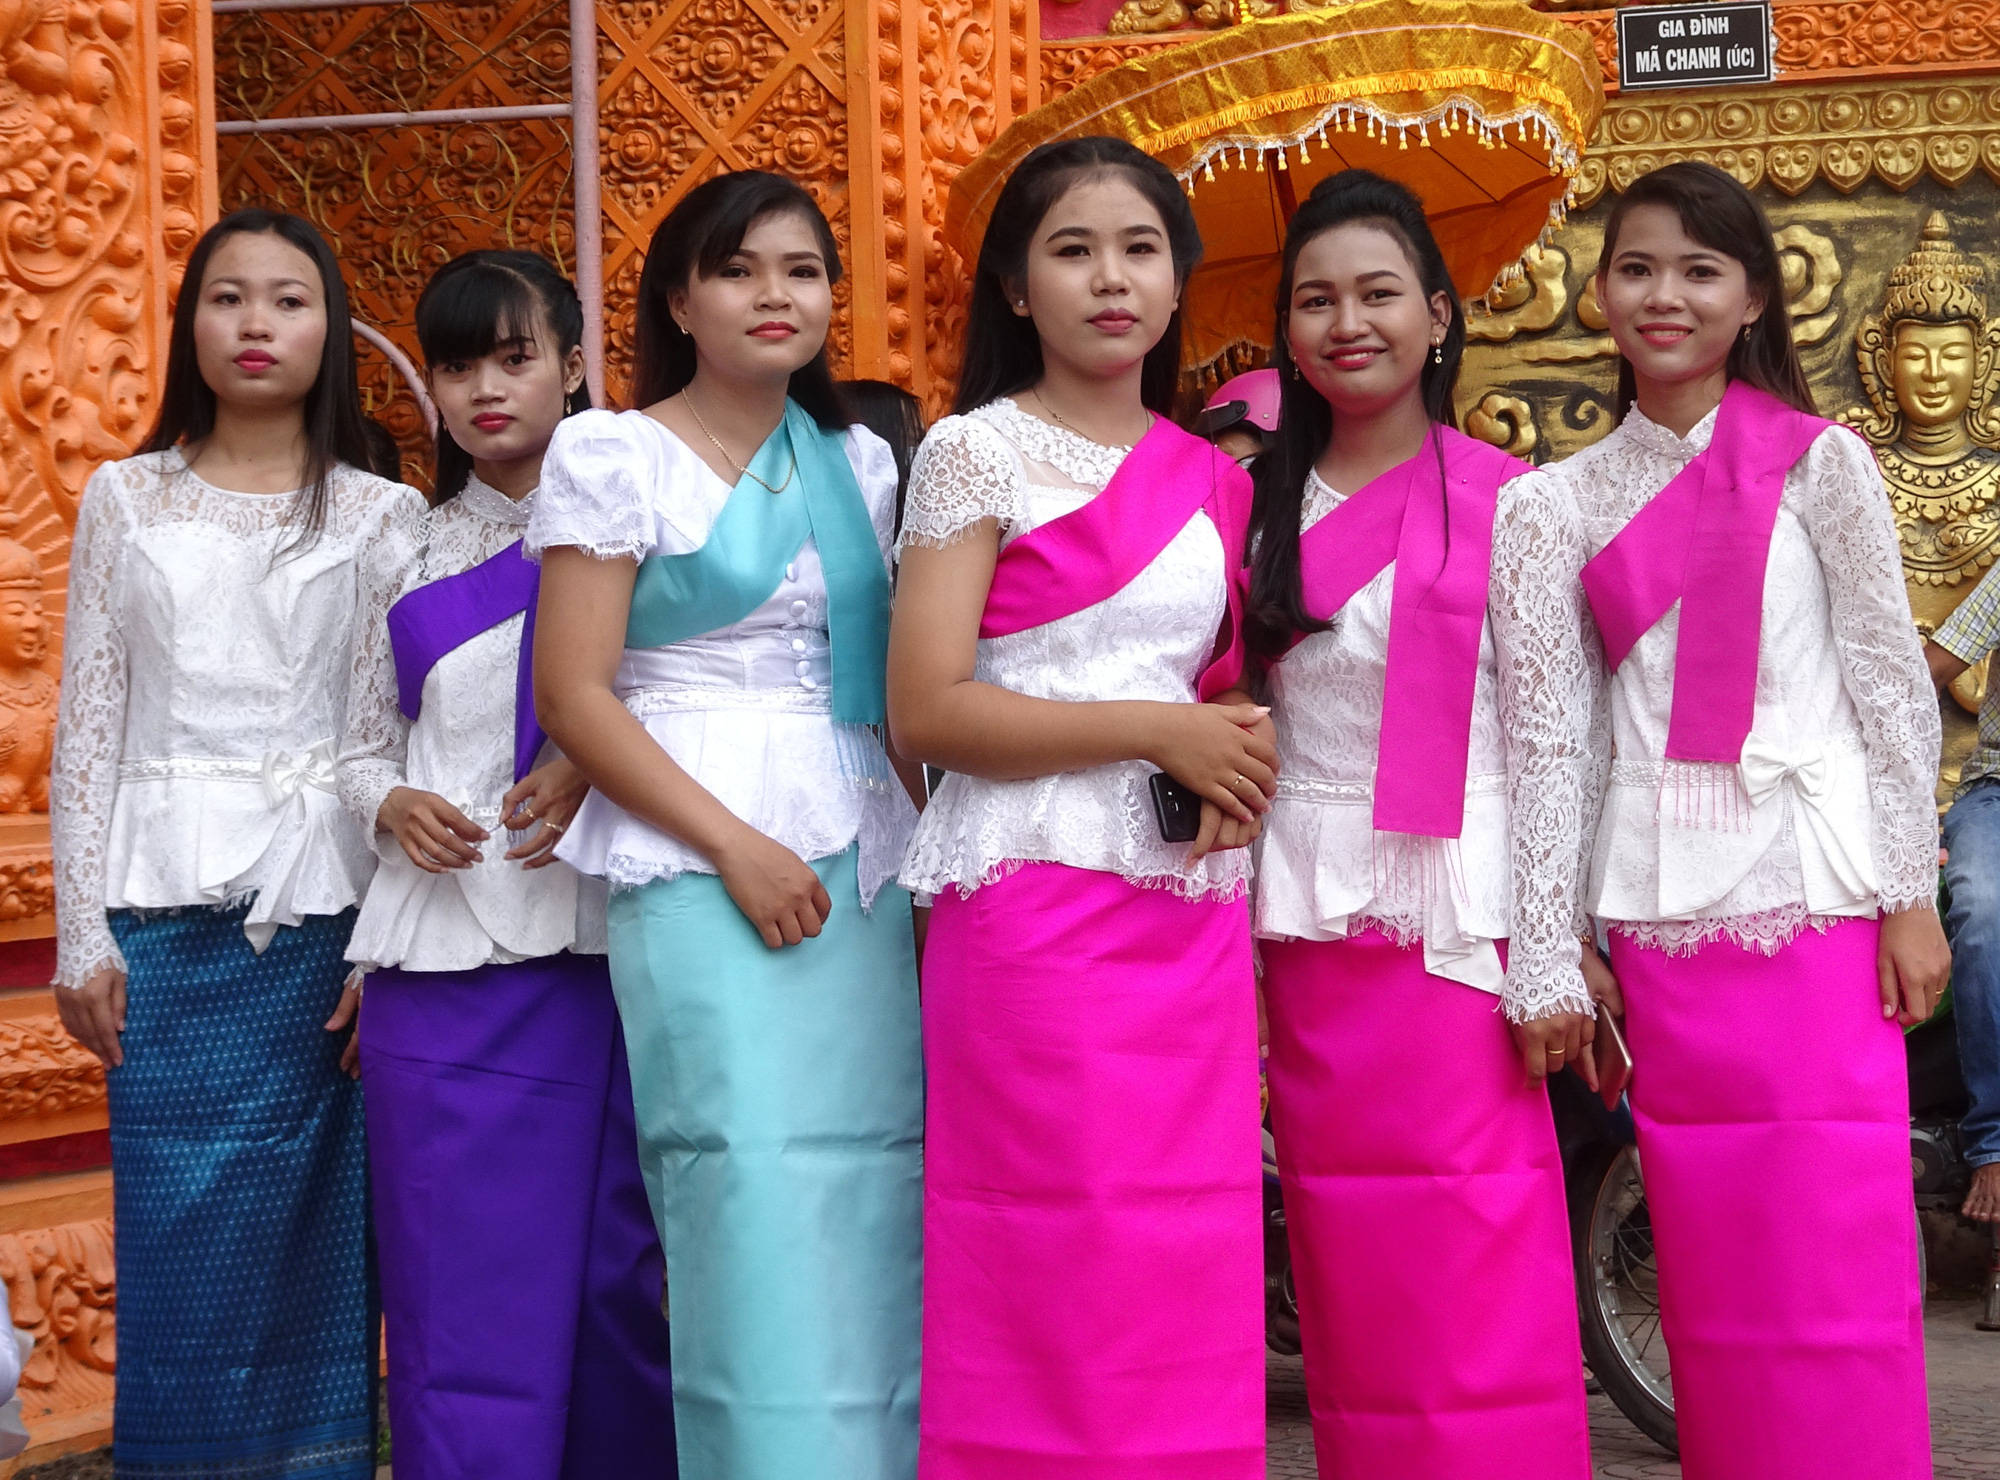 Nét văn hoá qua trang phục truyền thống của phụ nữ Khmer - Ảnh 2.